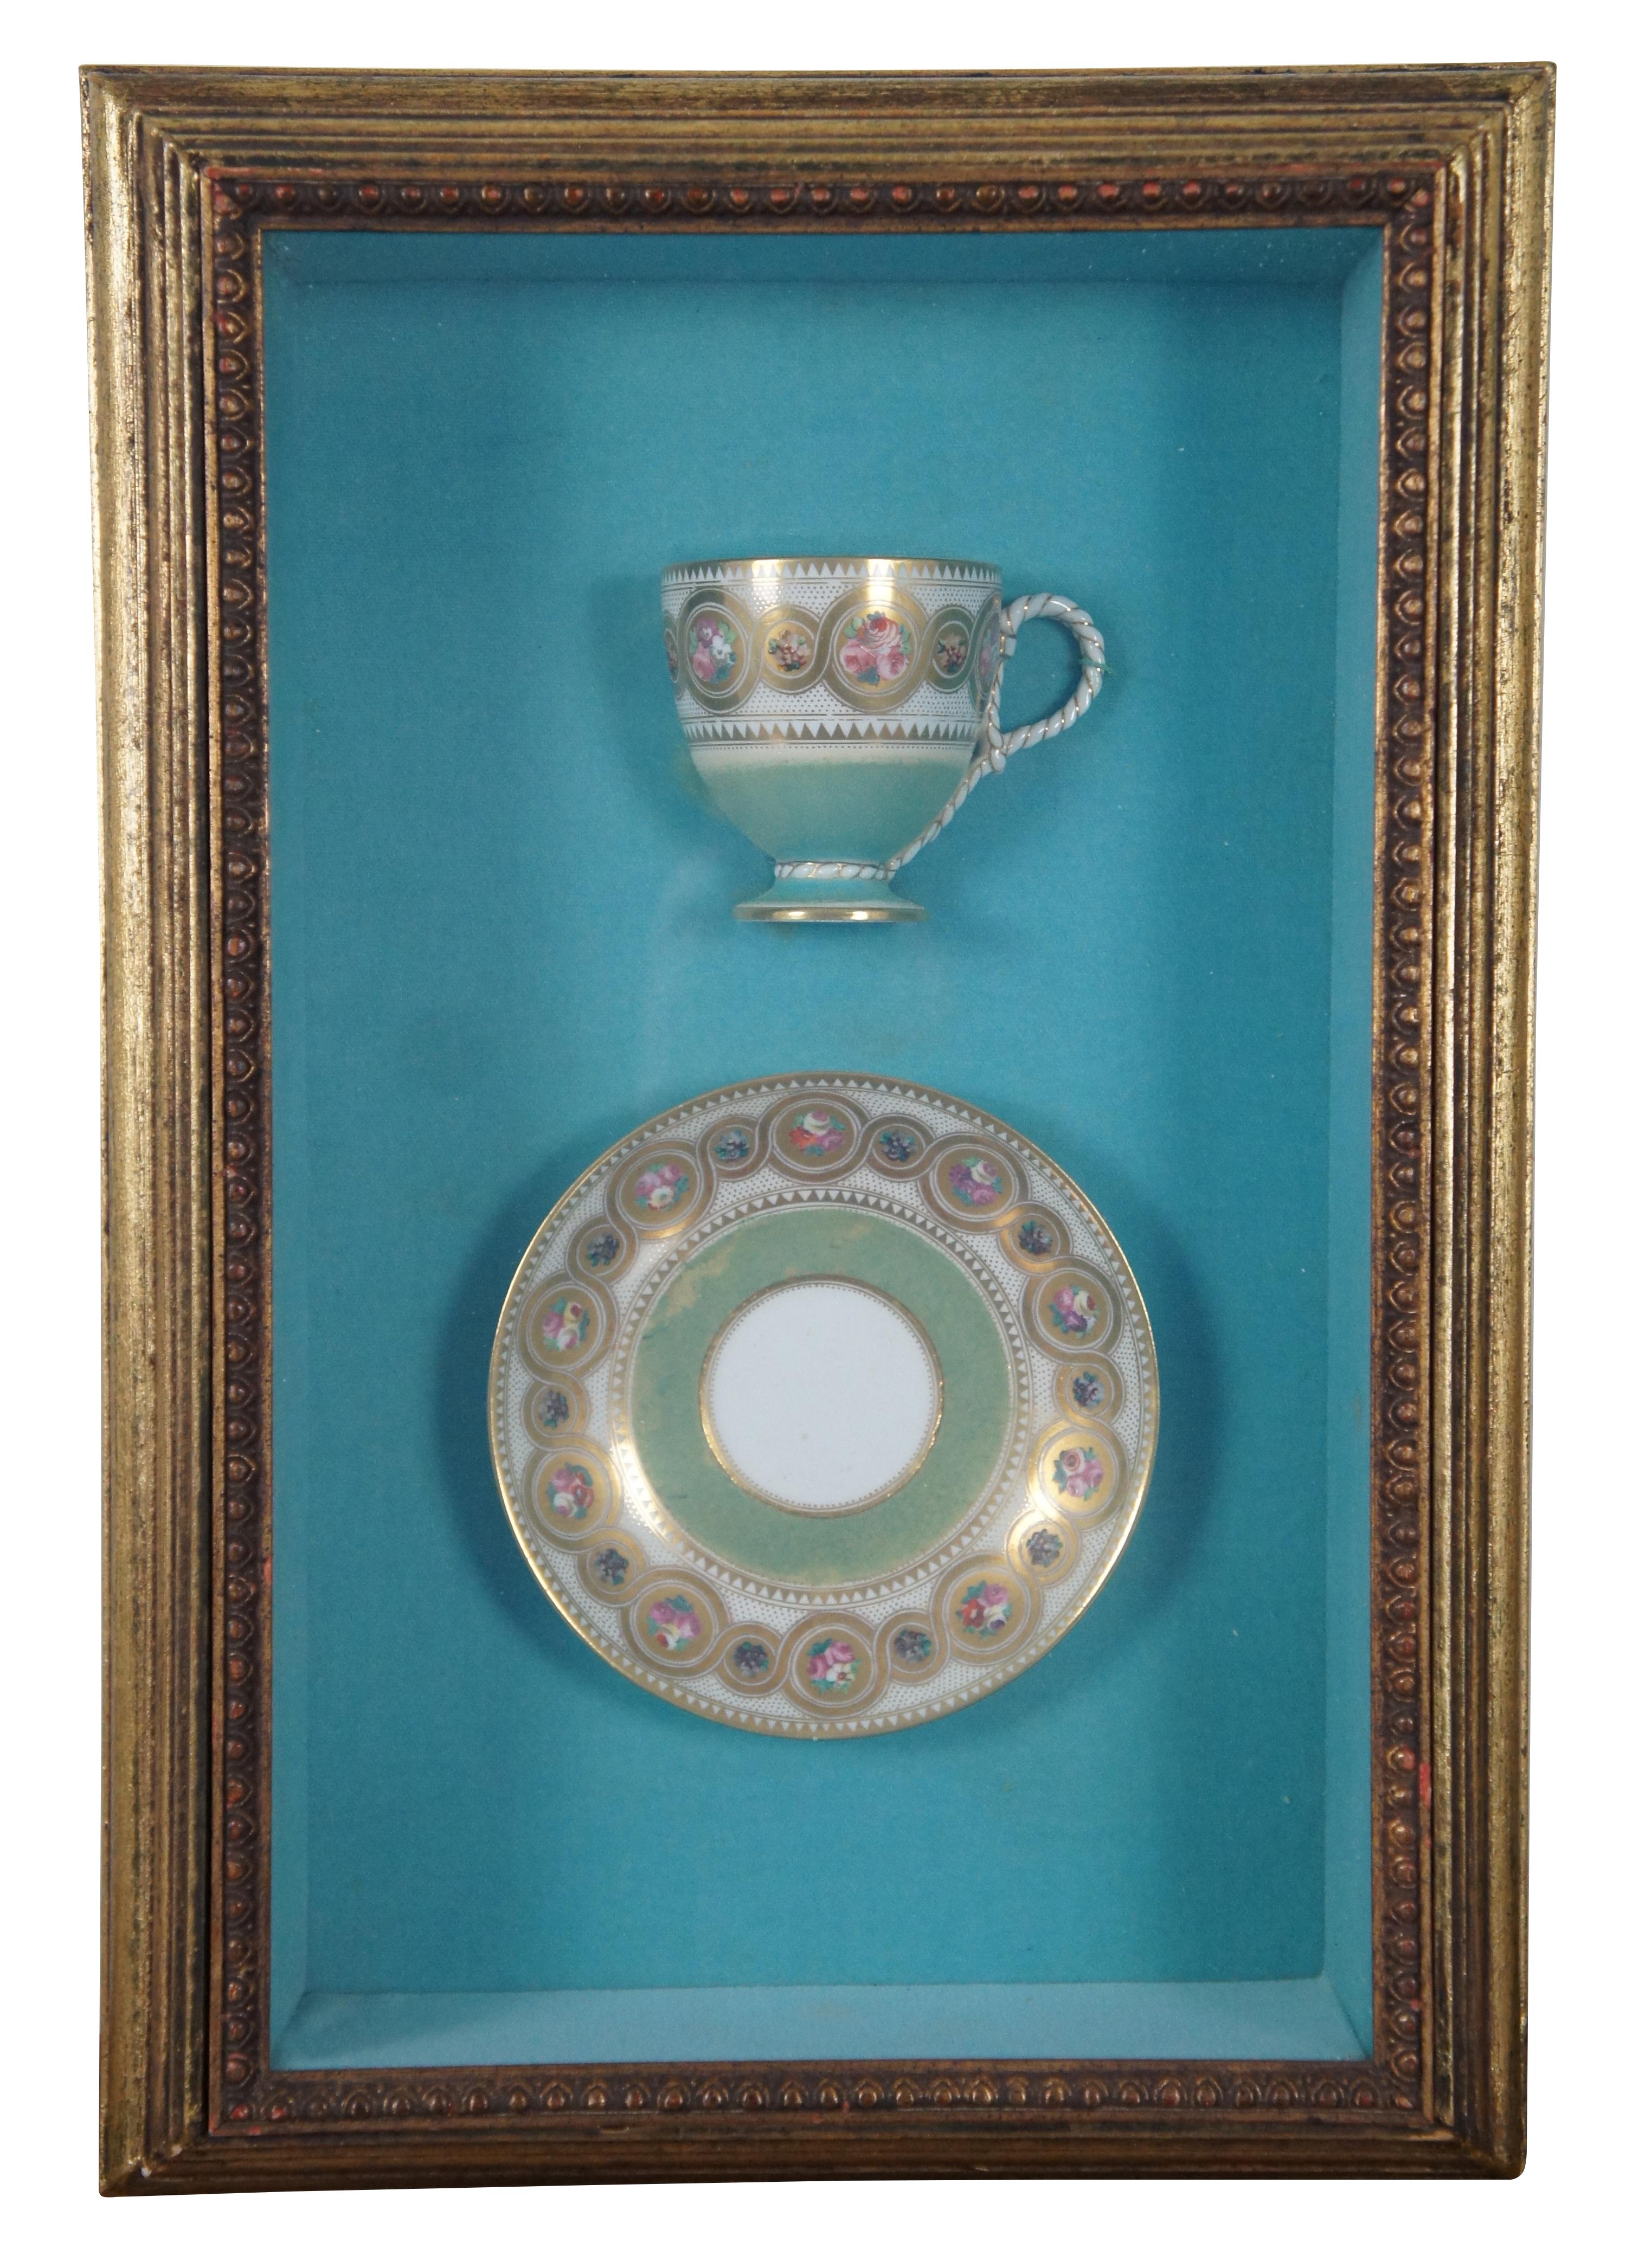 Seltene antike viktorianische englische / britische Porzellan Teetasse / Untertasse und Servierplatte, gemalt Türkis, Gold, und mit Blumen und Band Designs beringt. Montiert in tiefen, mehrfach abgeschrägten Schattenboxen mit